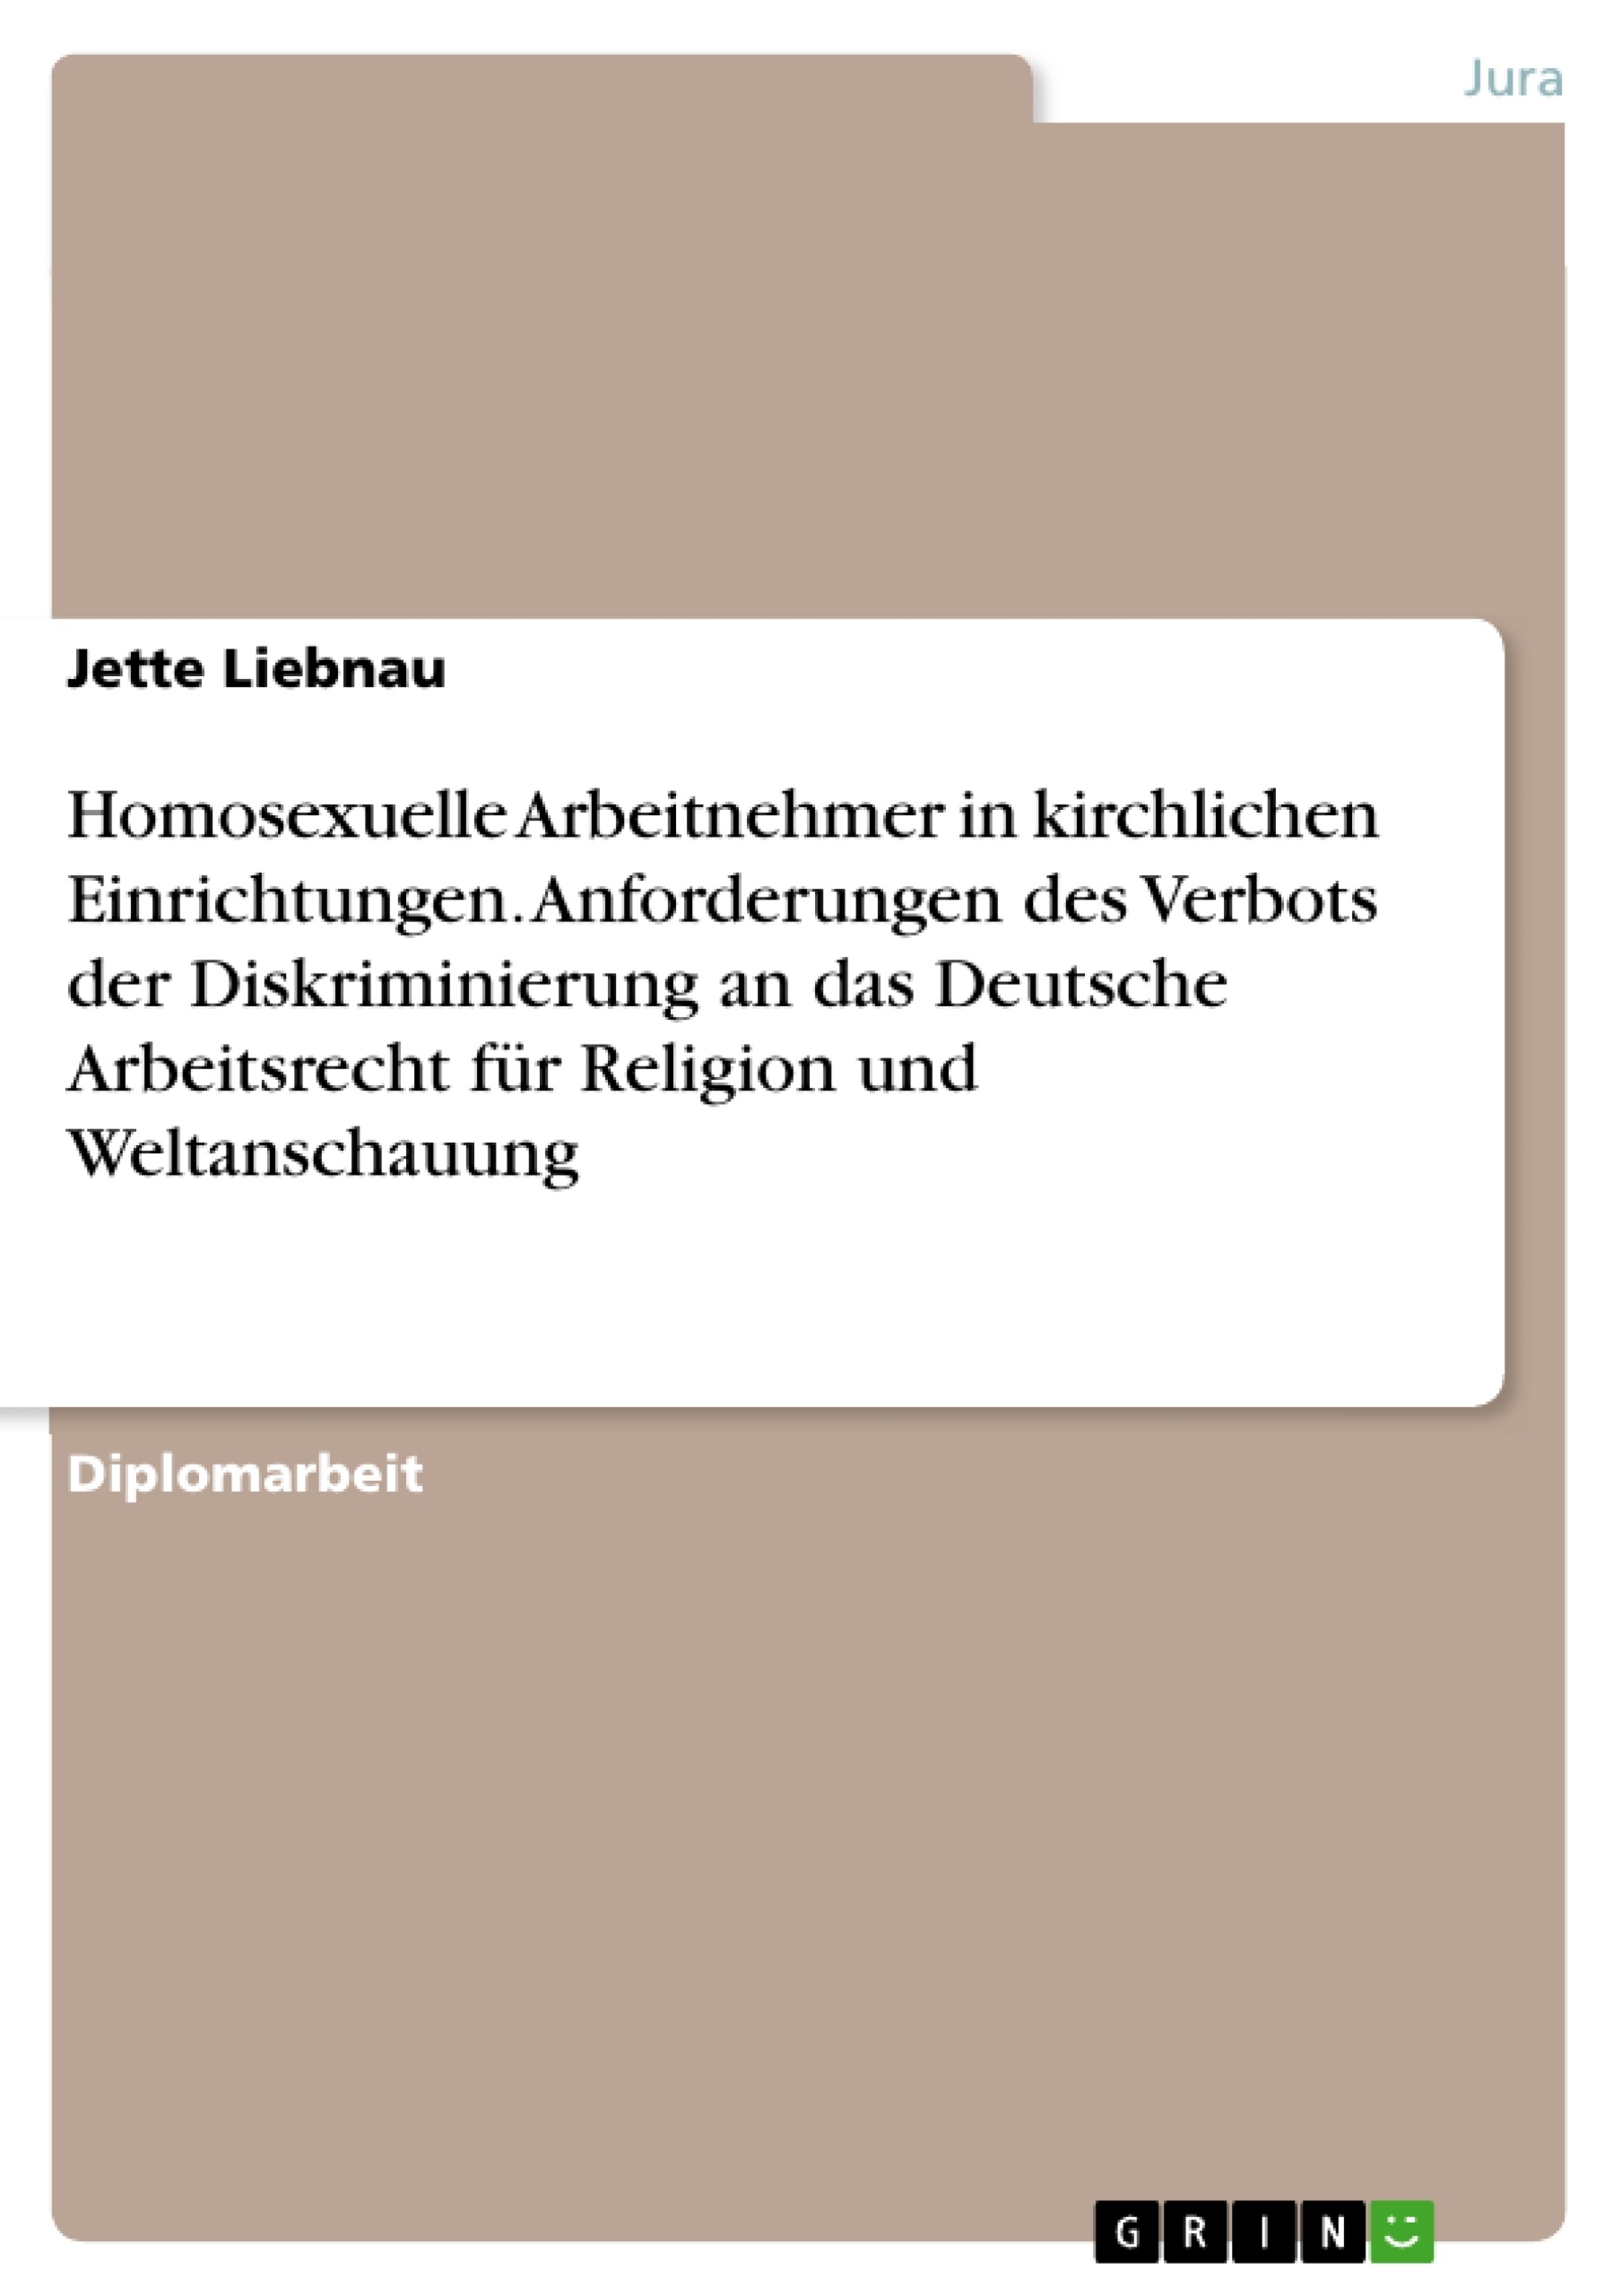 Titel: Homosexuelle Arbeitnehmer in kirchlichen Einrichtungen. Anforderungen des Verbots der Diskriminierung an das Deutsche Arbeitsrecht für Religion und Weltanschauung